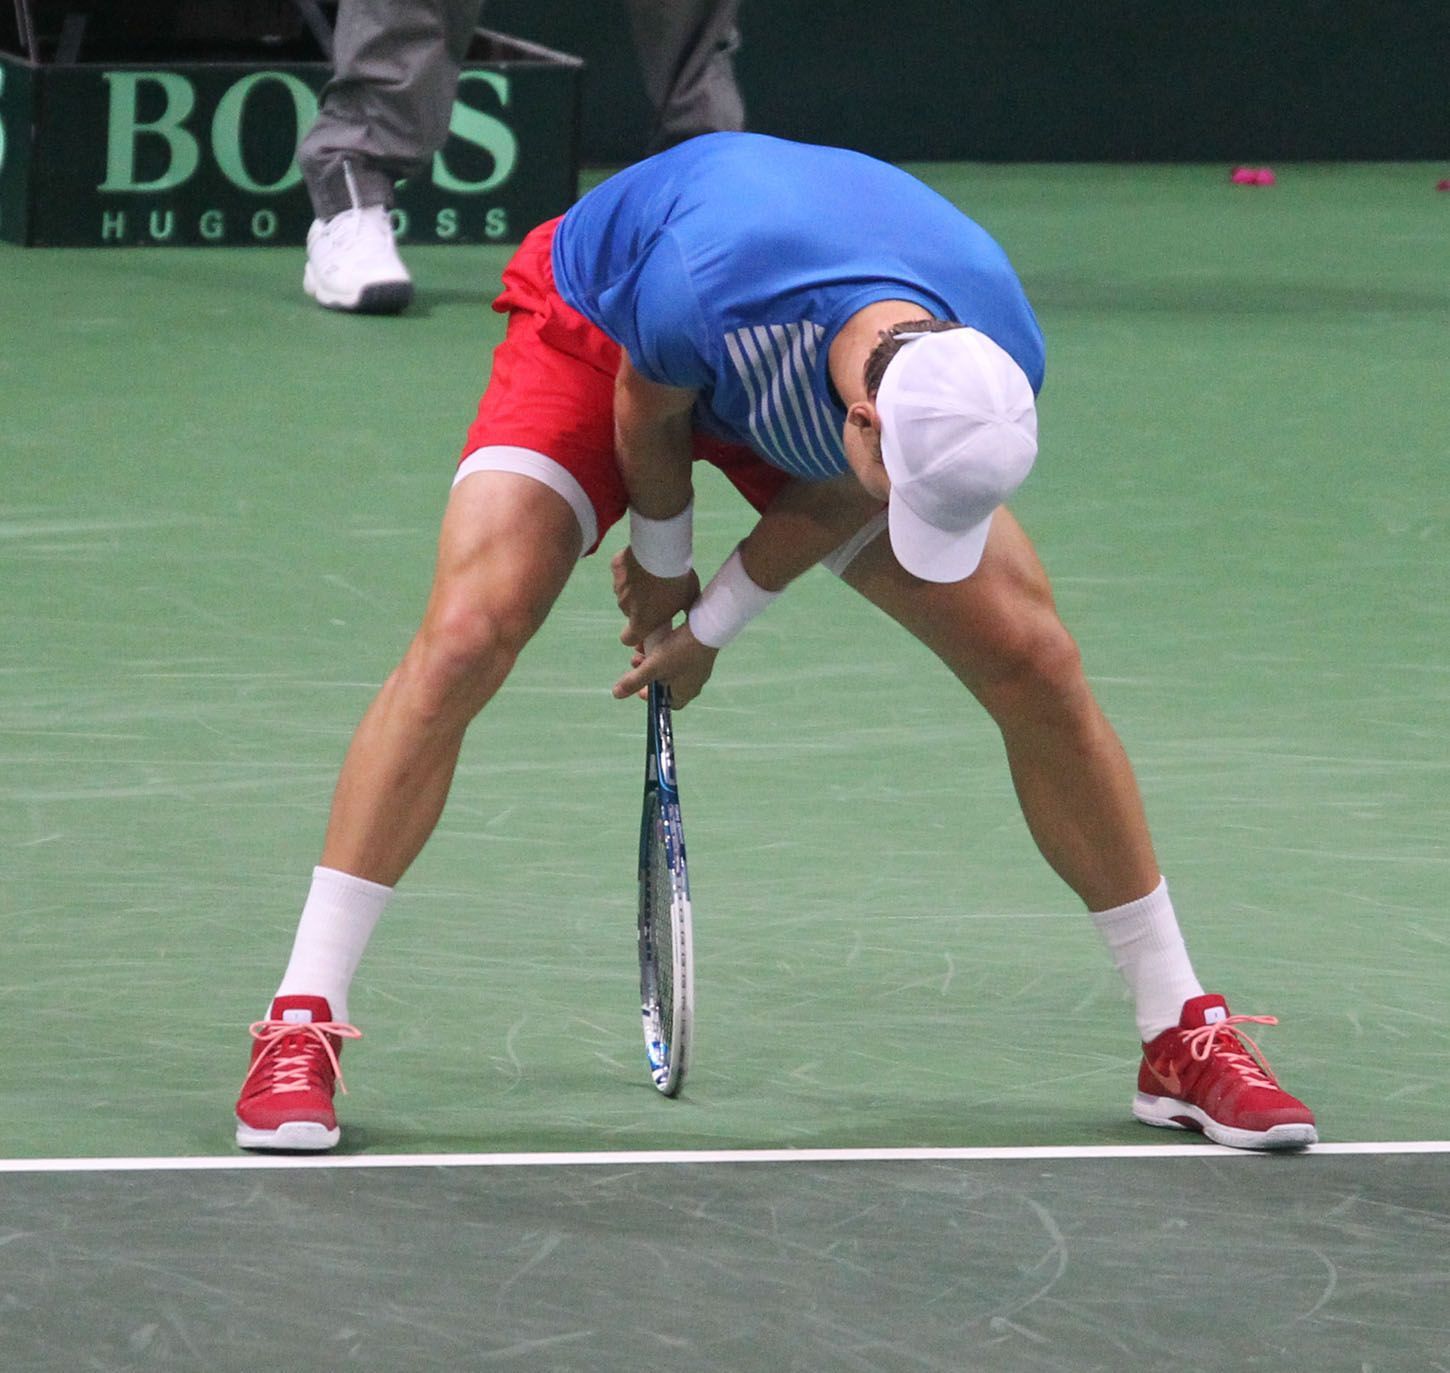 Tenis, DC, Česko - Argentina: čtyřhra -  Tomáš Berdych